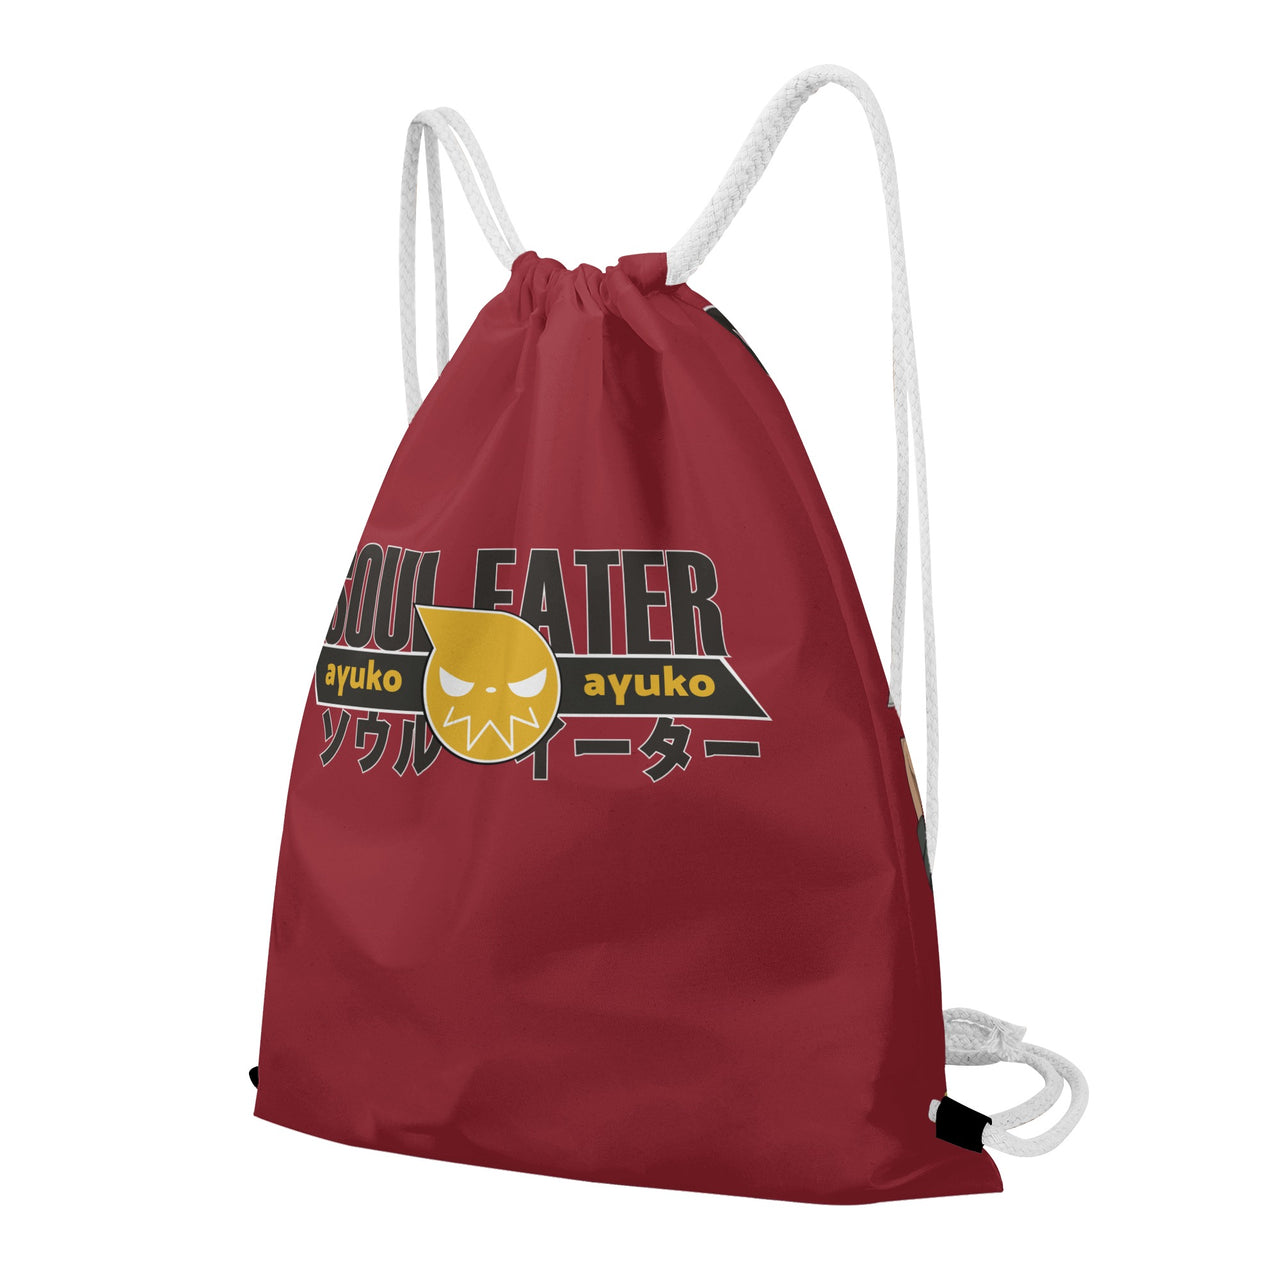 Soul Eater Anime Drawstring Bag